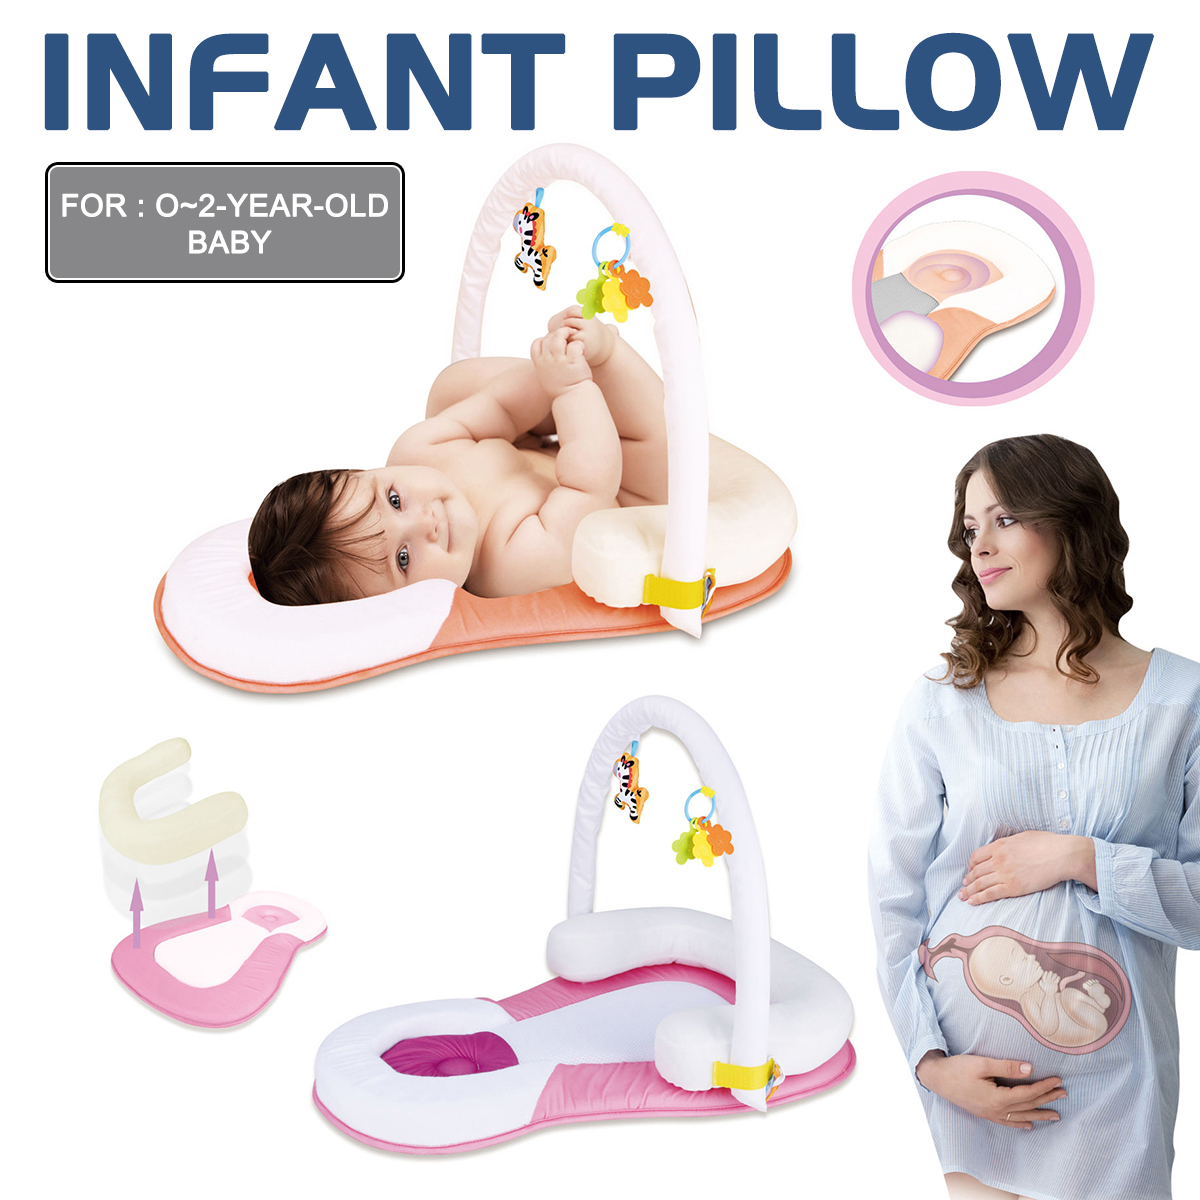 Pillow-Newborn-Baby-Infant-Sleep-Prevent-Flat-Head-Shape-Anti-Roll-Pillow-for-Newborn-Infant-Pillow-1809559-1